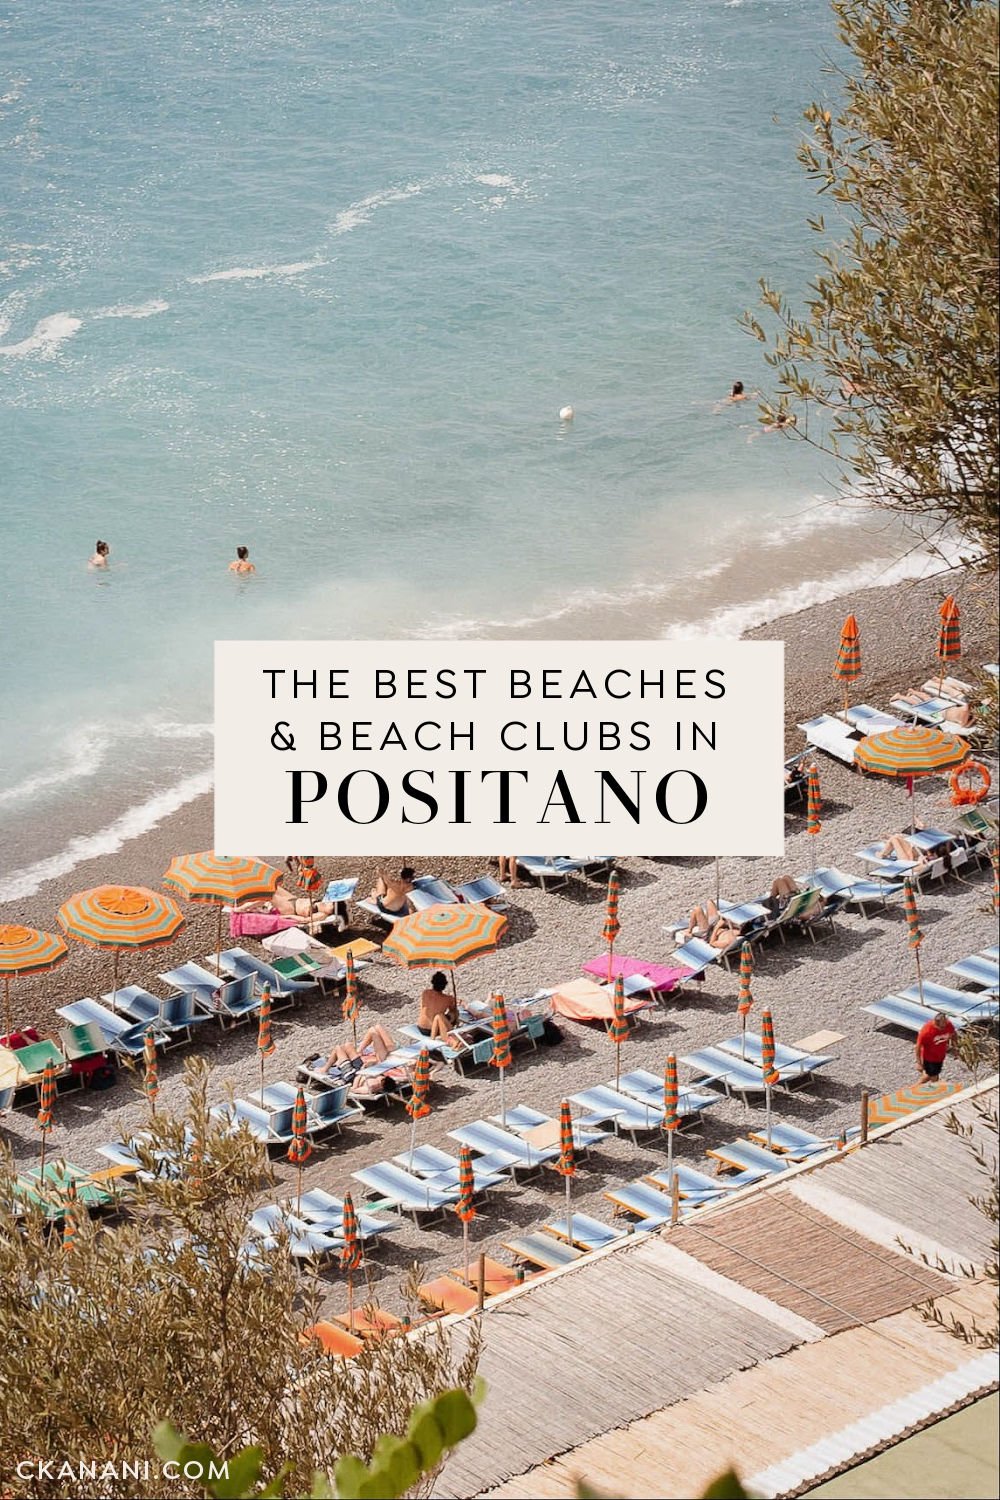 The best beaches in Positano (and beach clubs). things to do in Positano Italy, Positano things to do, Positano holiday, Positano itinerary, Amalfi Coast Italy, Italy destinations, Italy itinerary